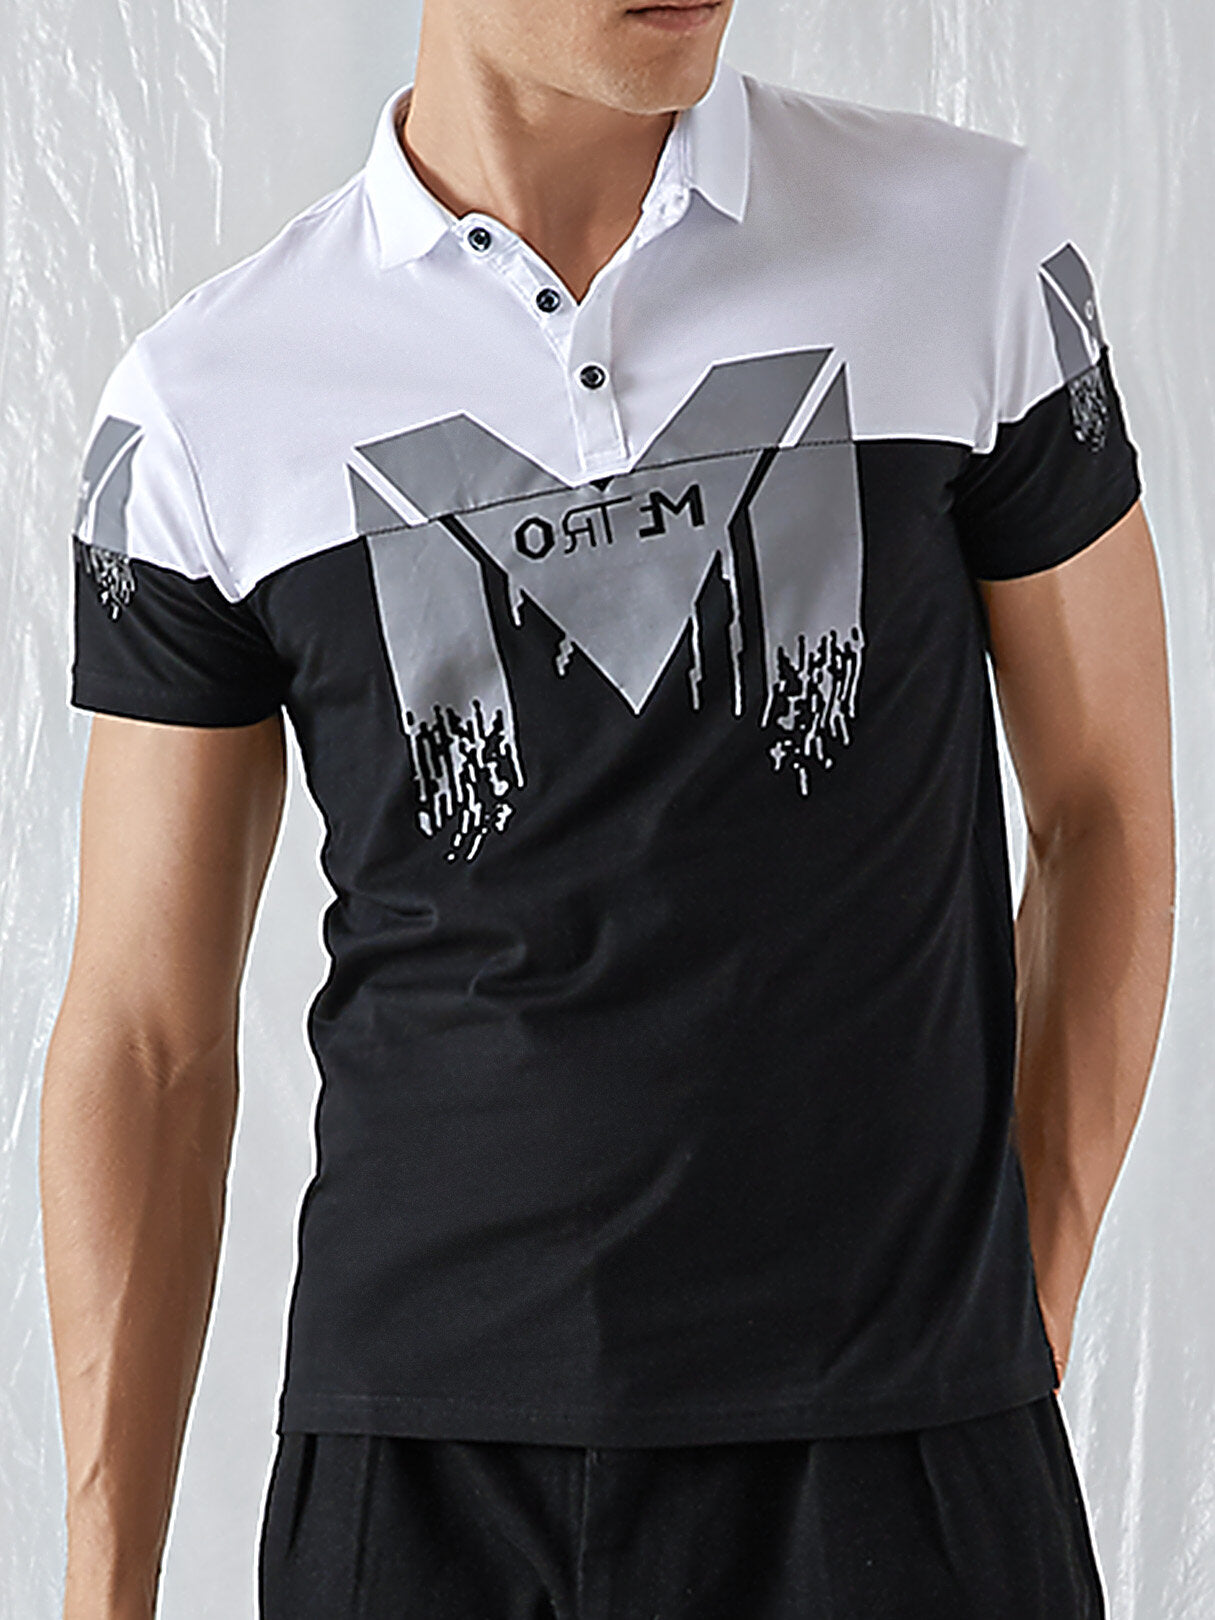 Cotton 2020 Short Sleeve T-shirt  Men's New Summer Dress Youth Business Casual Lapel Upper Garment Body